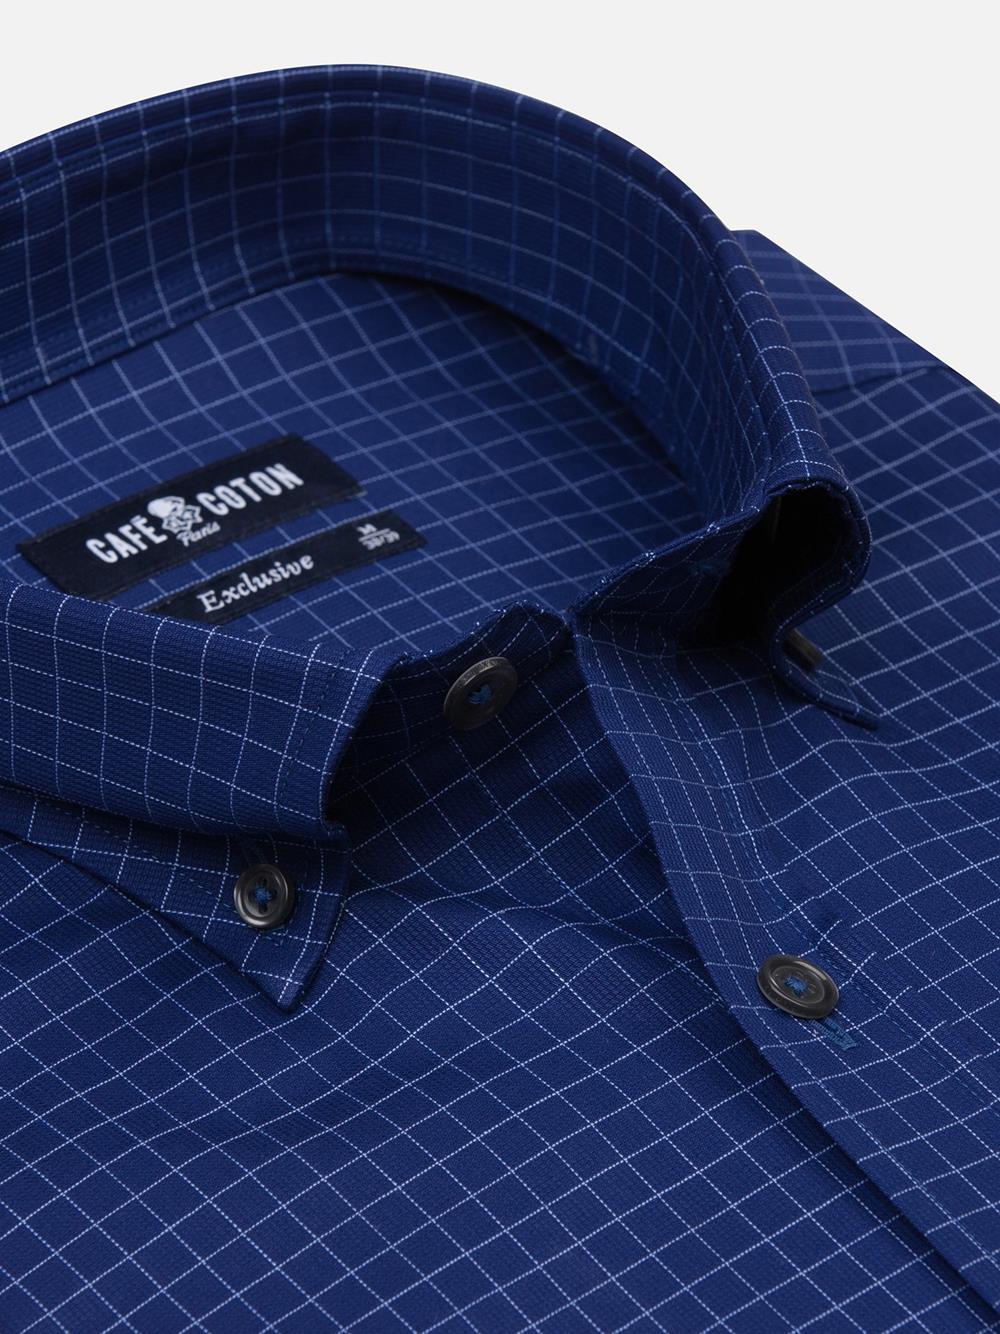 Clyde camisa de cuadros azul marino - Cuello abotonado